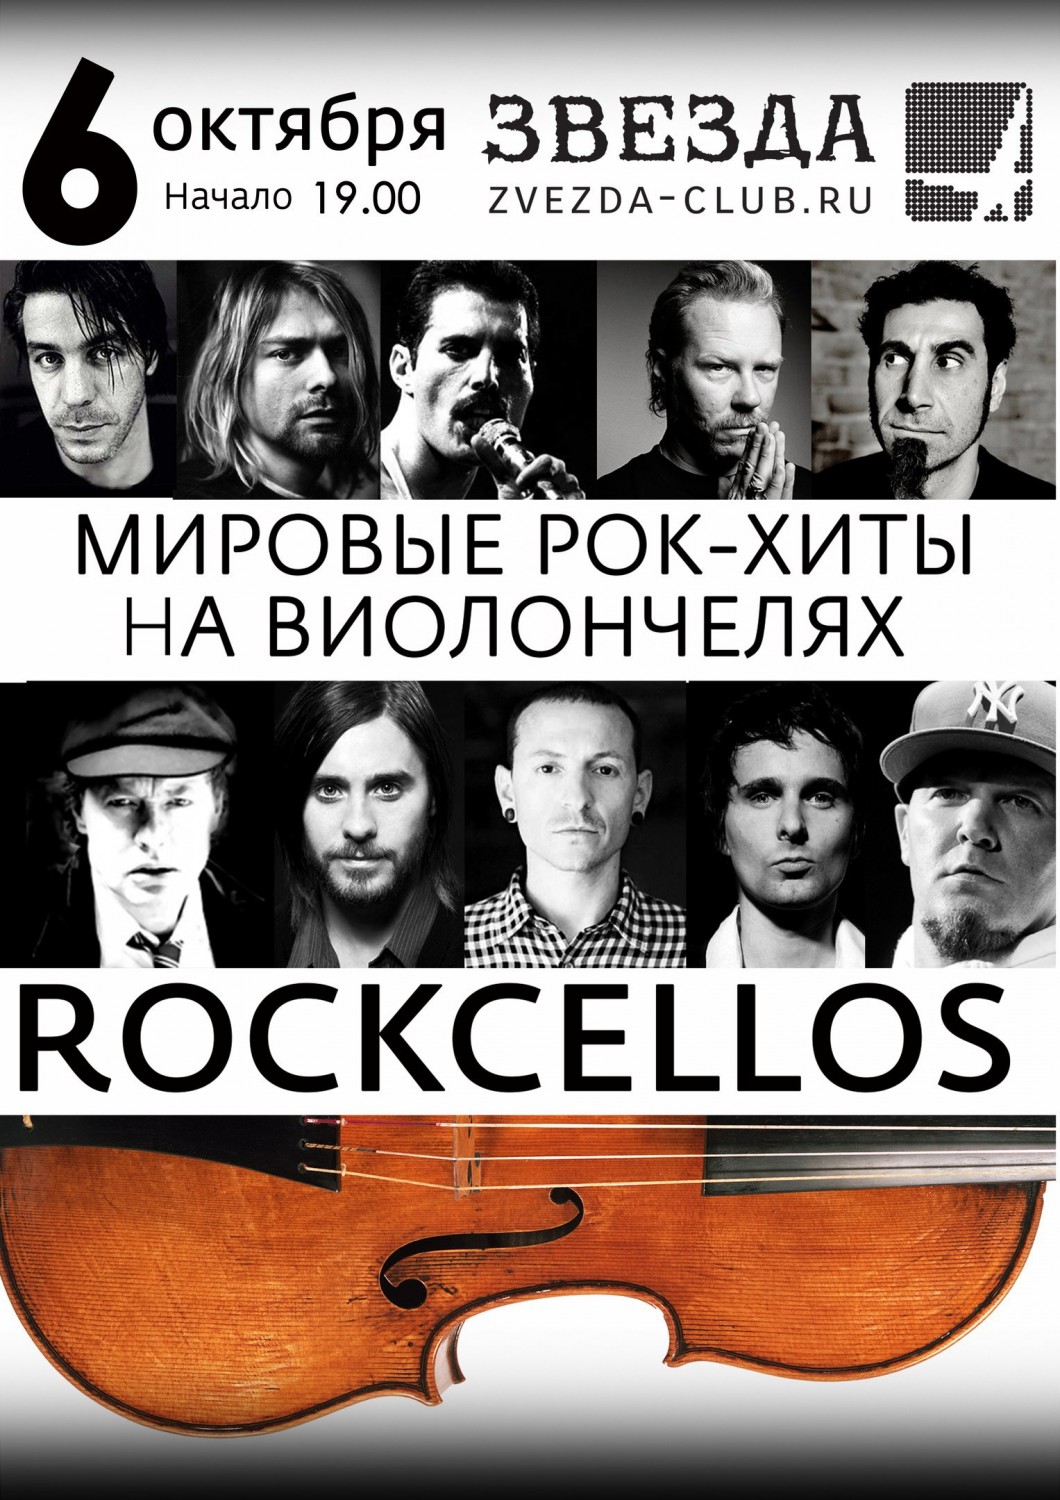 Мировой рок слушать. Рокселлос группа. Rockcellos концерт мировые рок. Мировые рок хиты на виолончелях. Rockcellos: мировые рок-хиты на виолончелях.